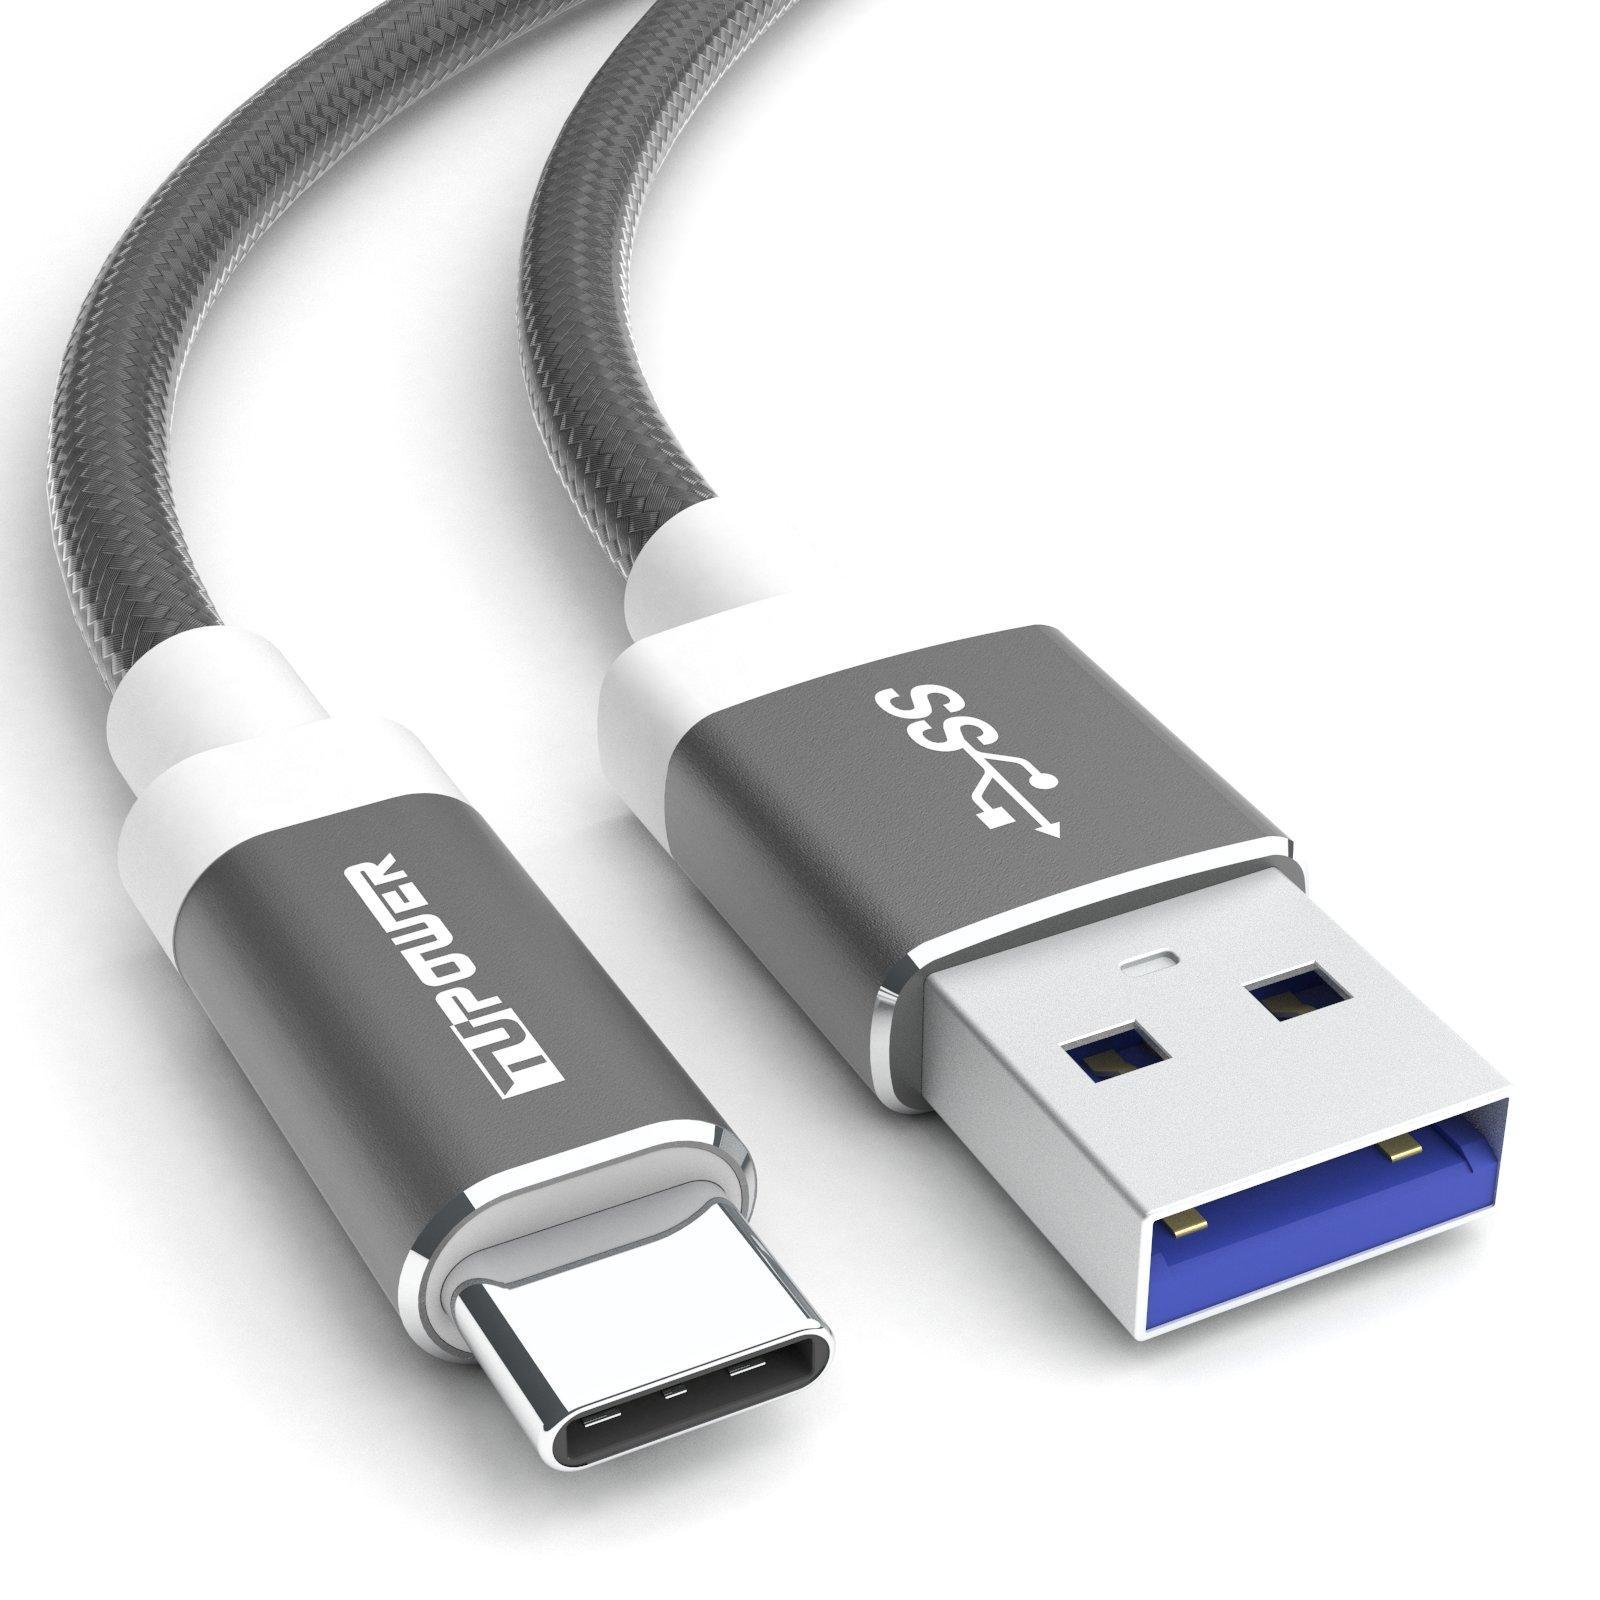 TUPOWER K02 USB C USB Kabel Samsung auf USB für Ladekabel C QuickCharge Datenkabel 1m 3.0 A Handy Kabel